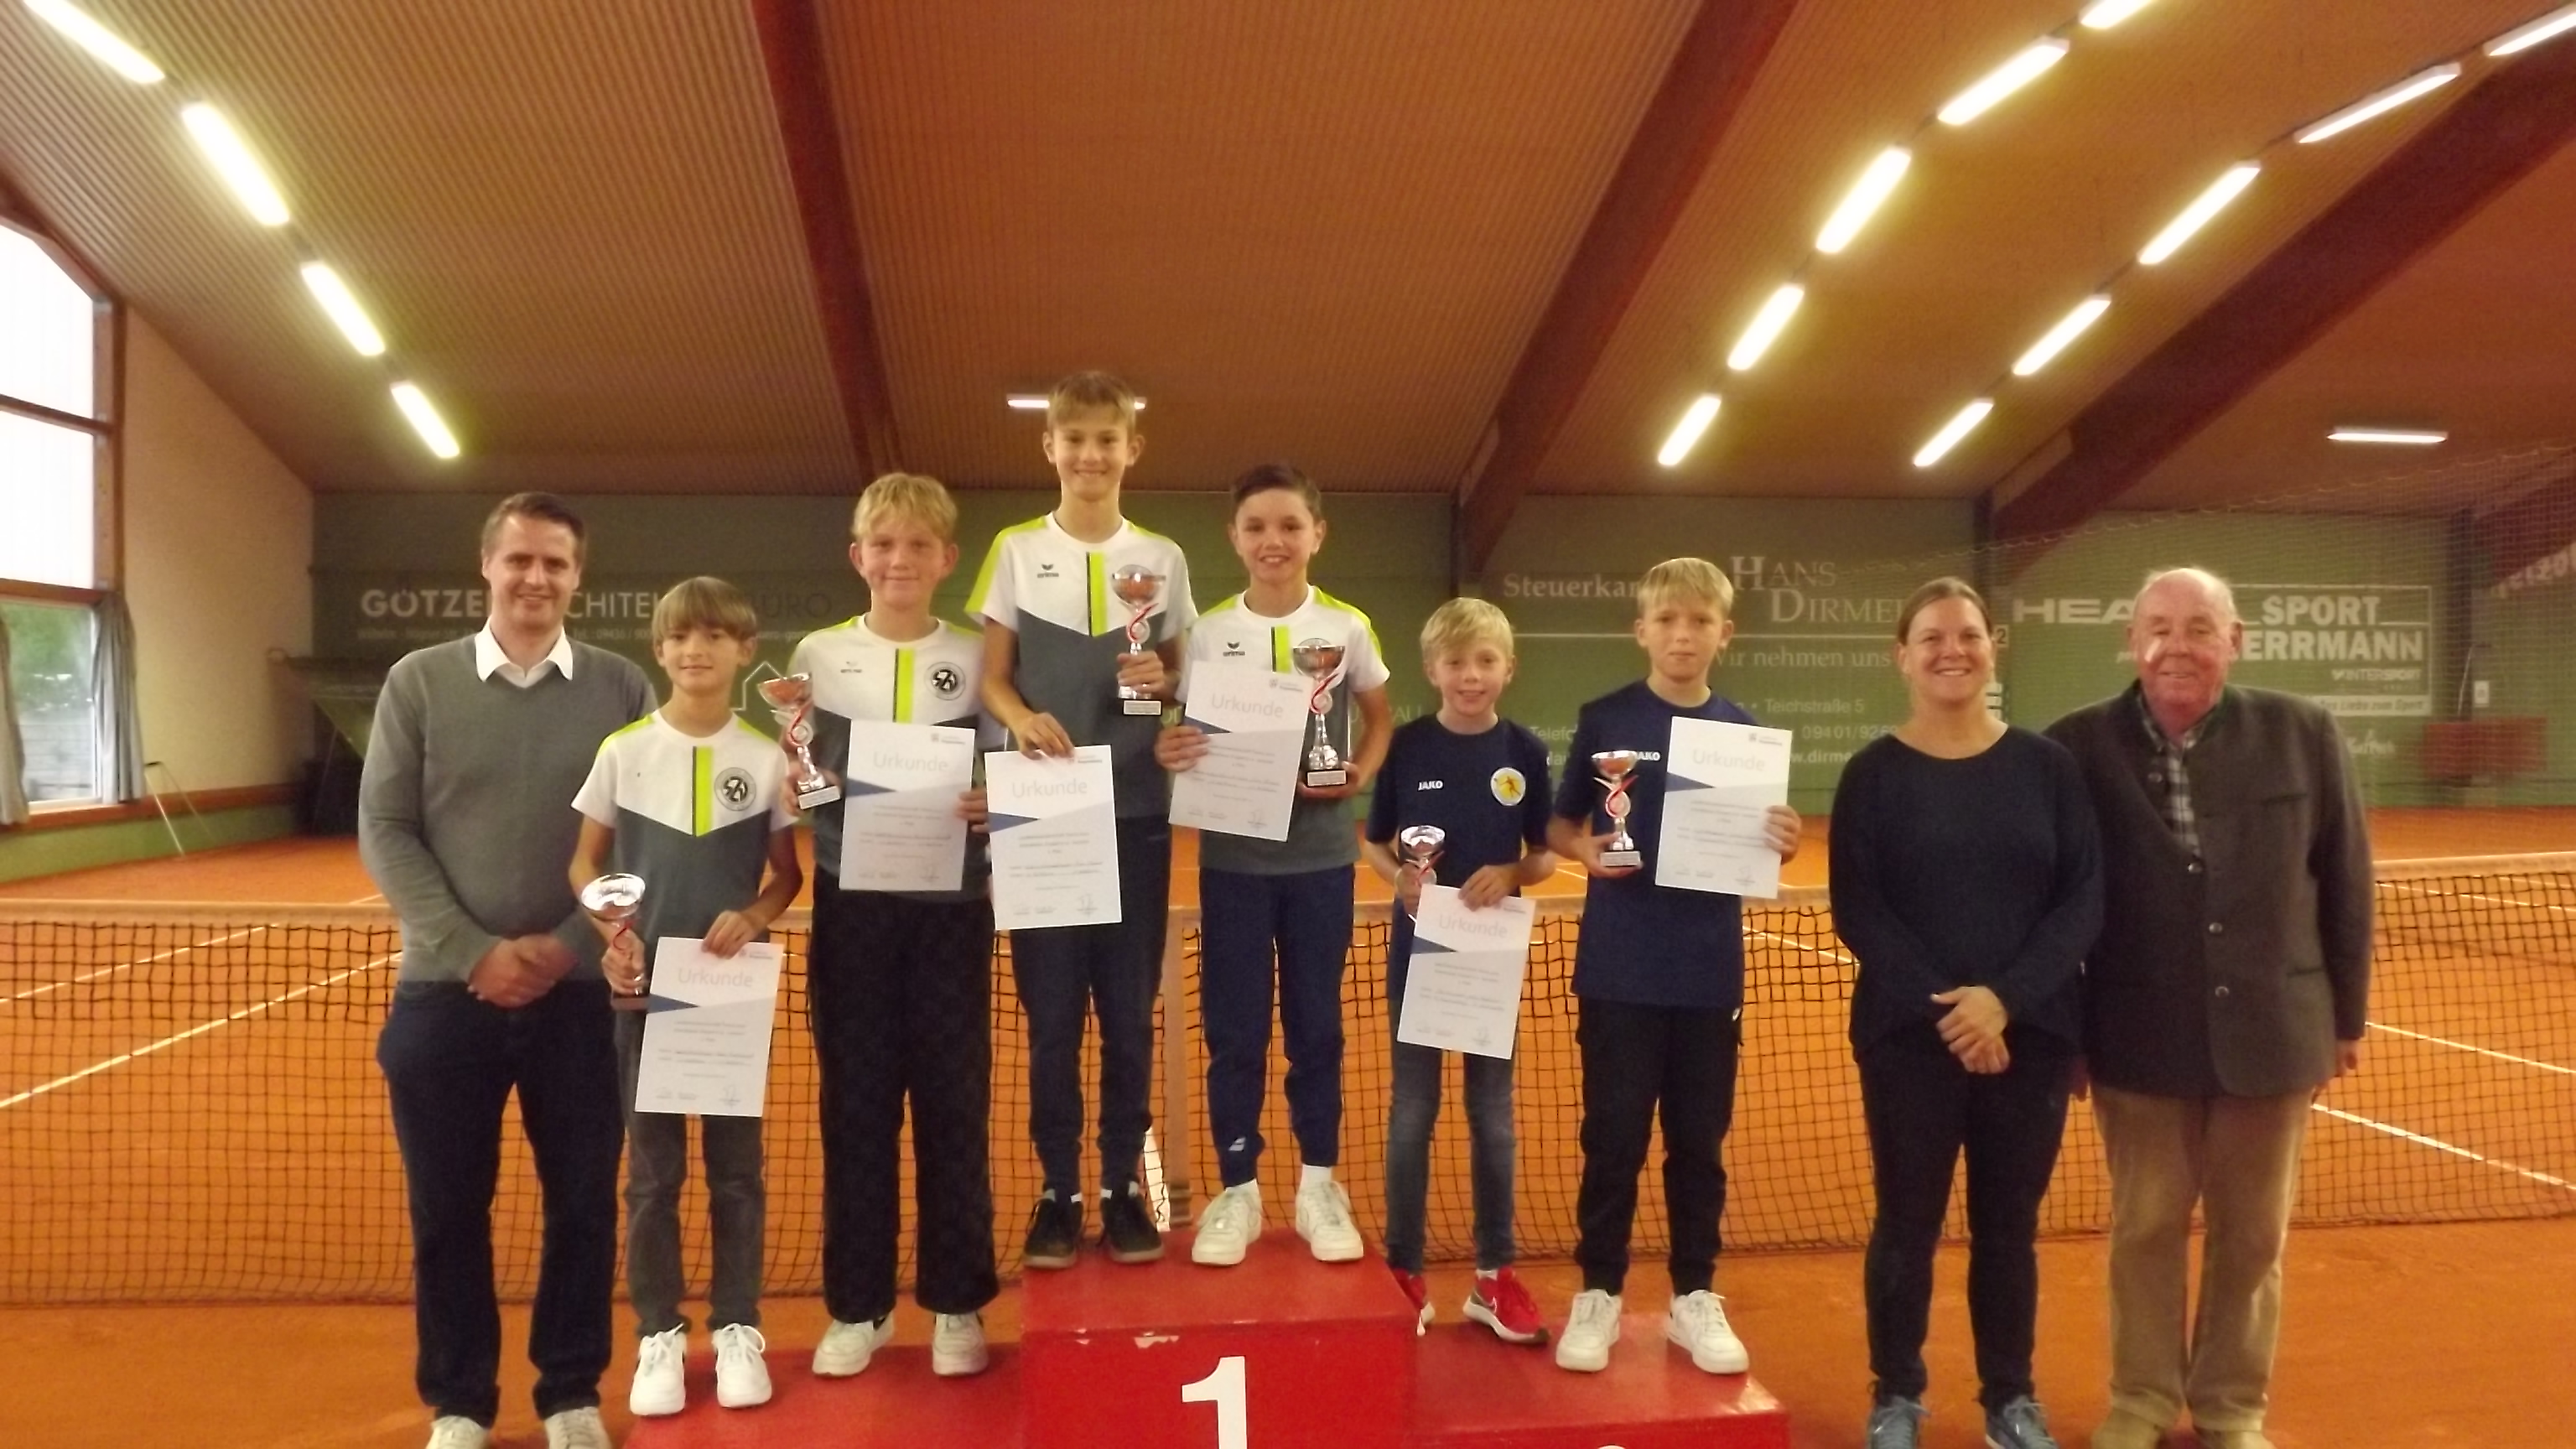 Sportmeisterschaften im Landkreis Regensburg „Meister dahoam“